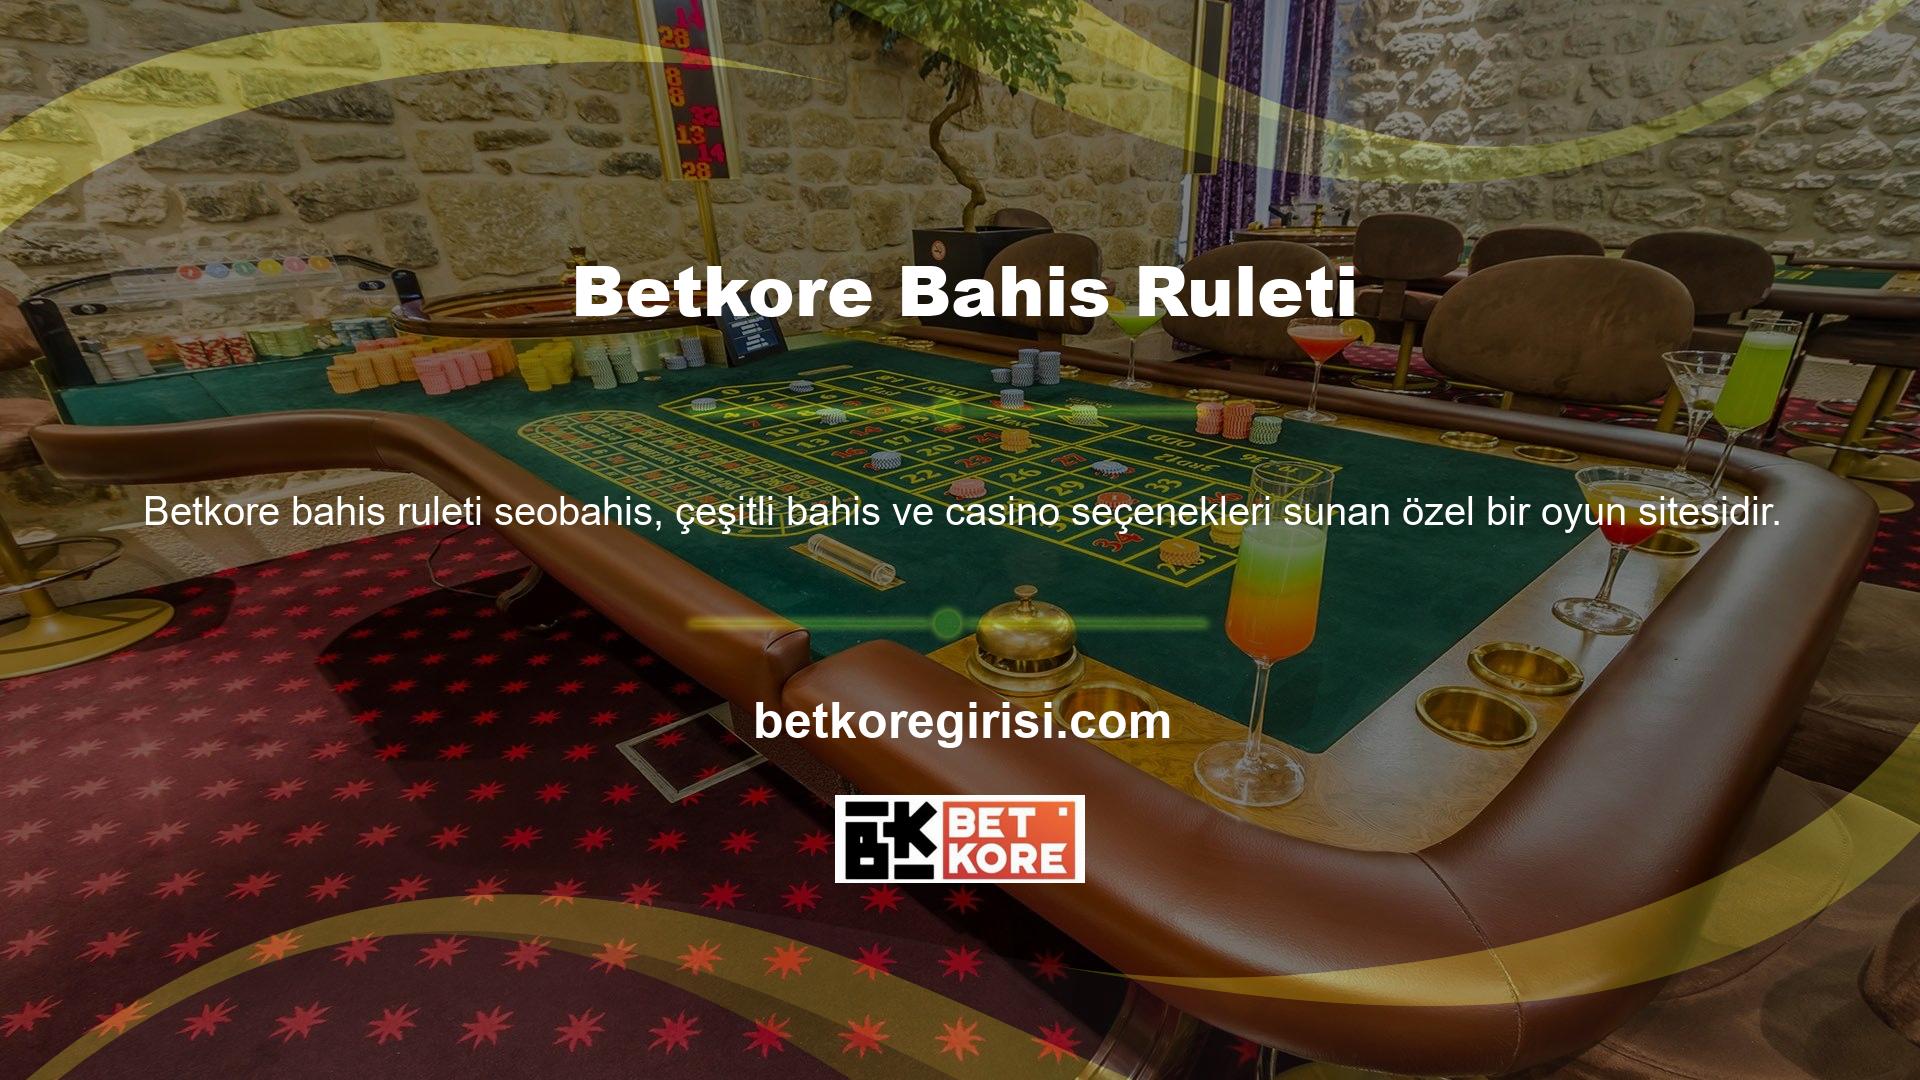 Betkore, Türk yayın girdiğinden bu yana çok sayıda oyuncu kazanmış ve casino sektöründe aktif bir web sitesidir